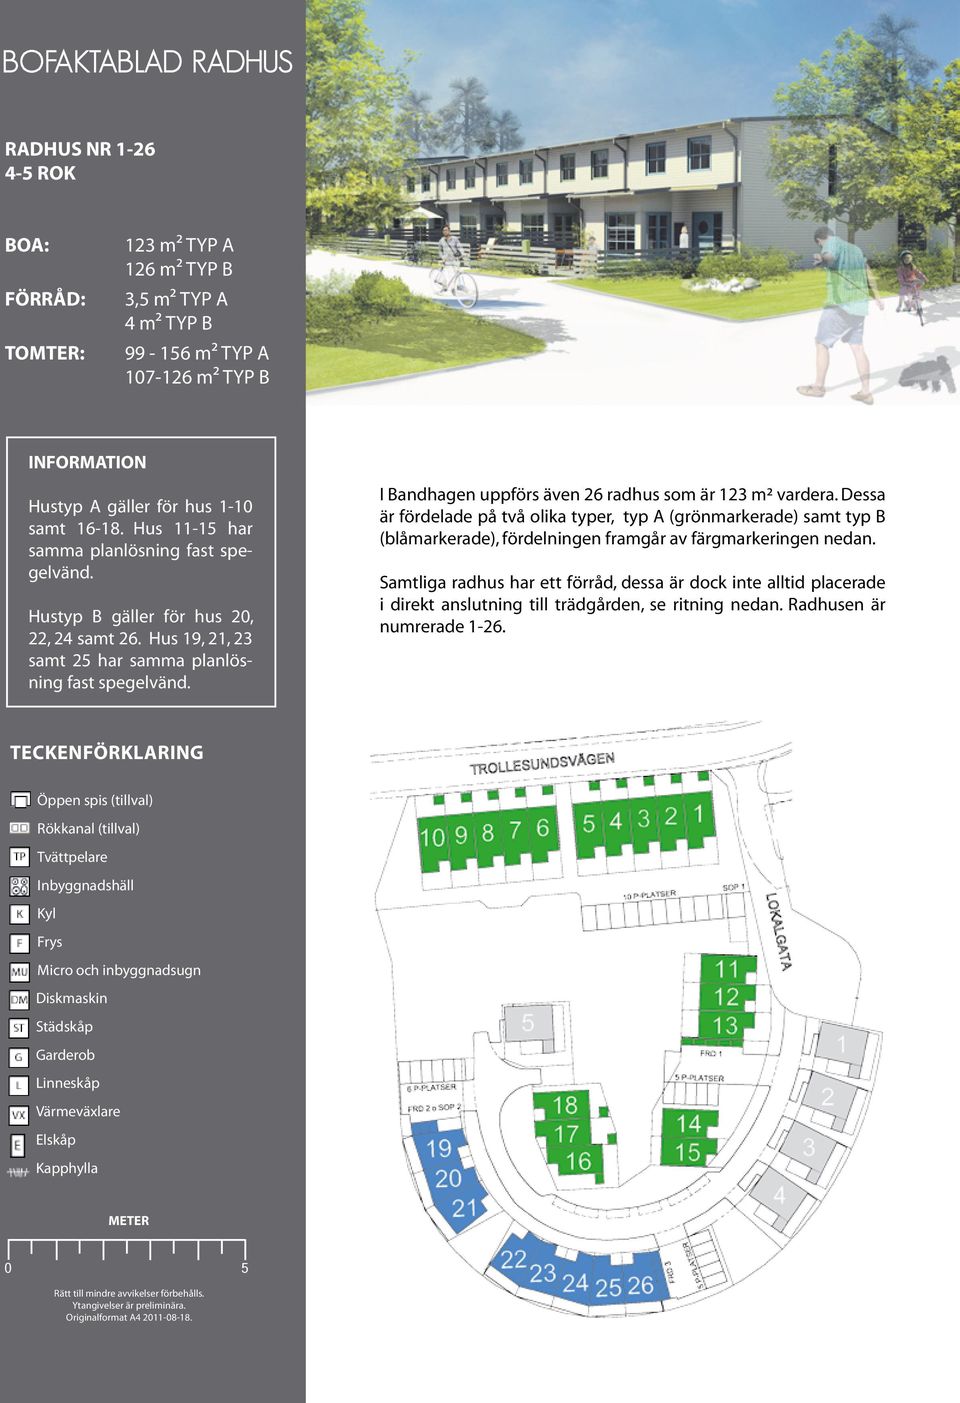 I Bandhagen uppförs även 26 radhus som är 123 m² vardera. Dessa är fördelade på två olika typer, typ A (grönmarkerade) samt typ B (blåmarkerade), fördelningen framgår av färgmarkeringen nedan.